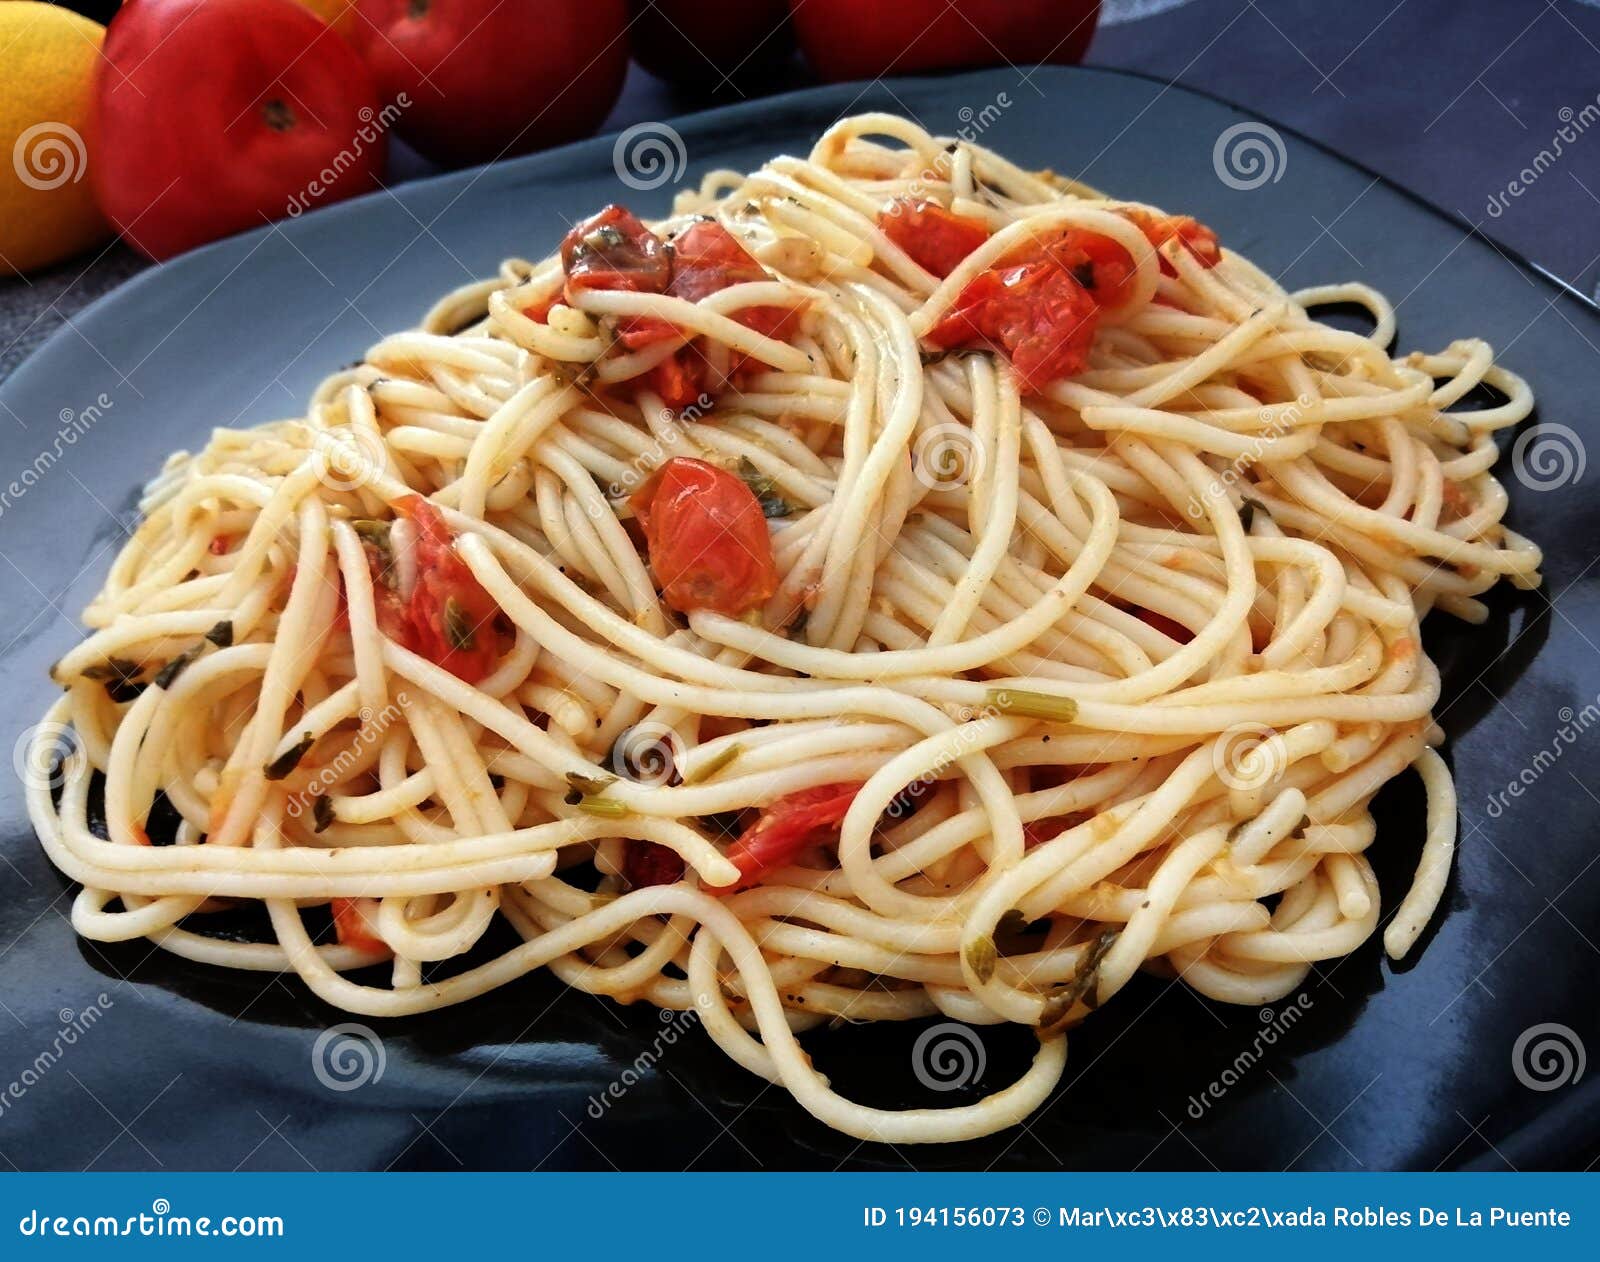 plato de sapaguetti con tomate y albahaca